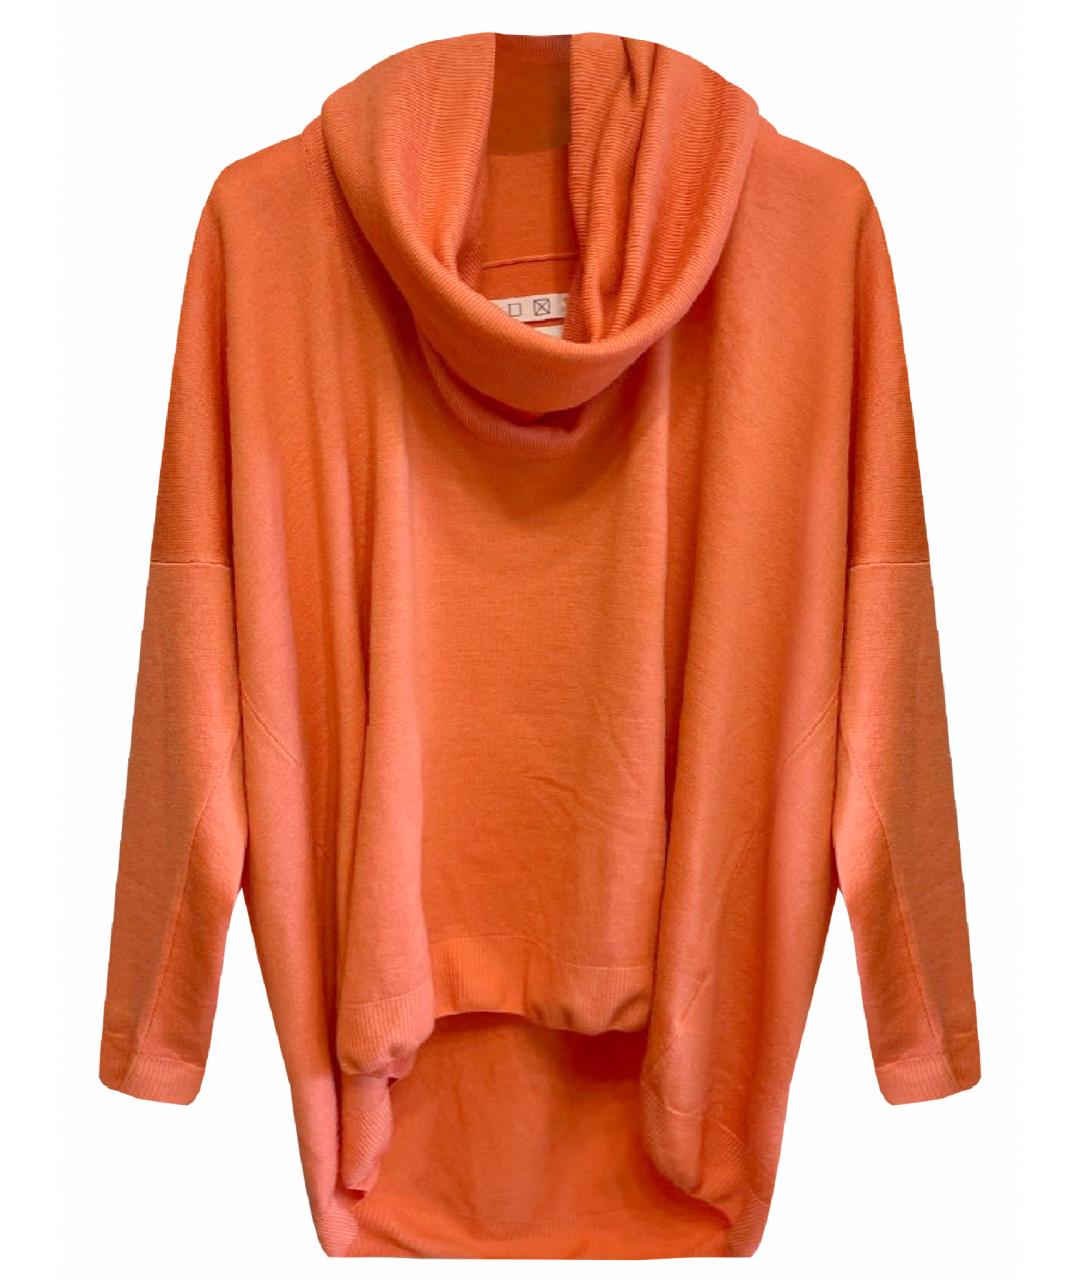 MM6 MAISON MARGIELA Оранжевый шерстяной джемпер / свитер, фото 1